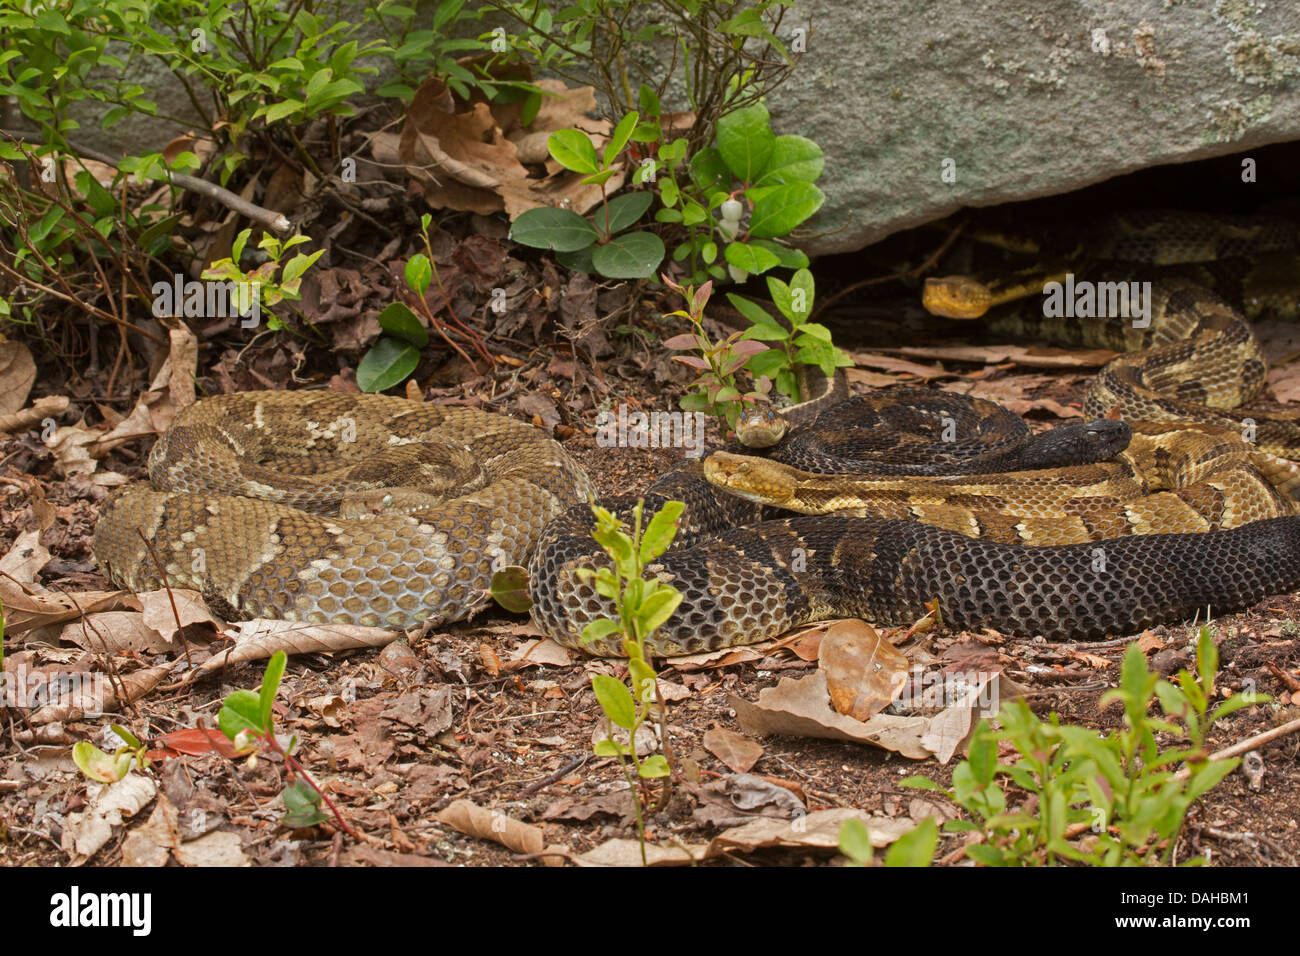 Timber rattlesnakes, Crotalus horridus, Pennsylvania, Gravid females, common gartersnake Thamnophis sirtalis among rattlesnake Stock Photo